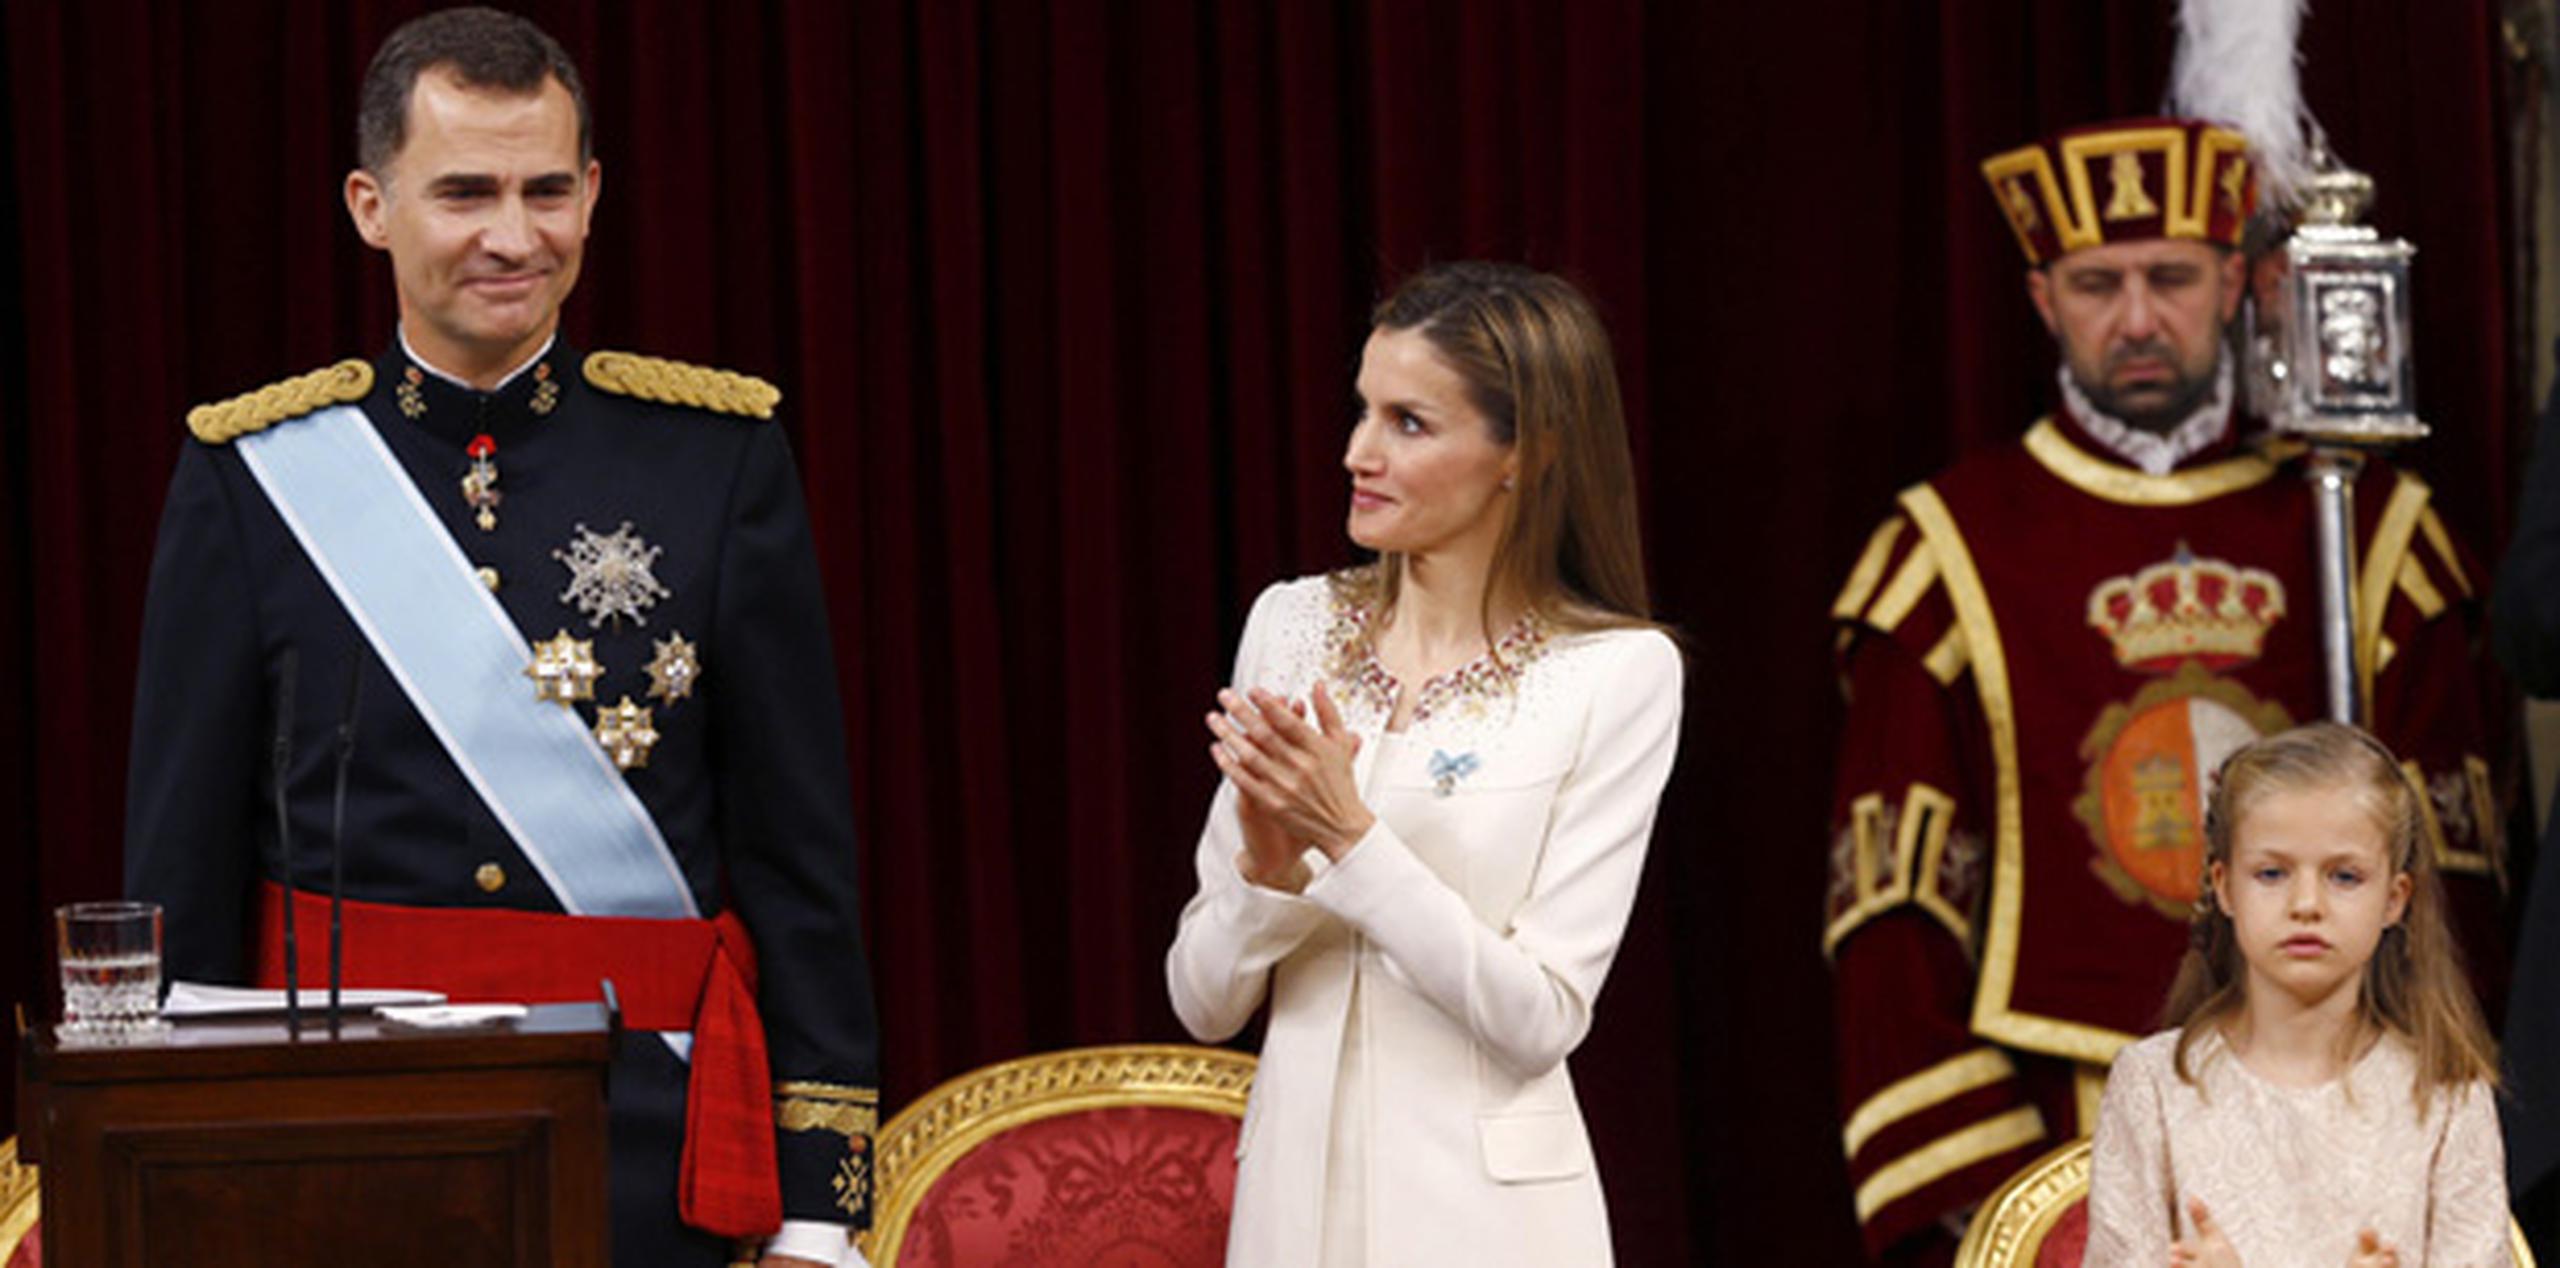 La reina Letizia aplaude al rey Felipe VI, tras su primer discurso ante las Cortes Generales después su proclamación, en presencia de la princesa de Asturias. (EFE)